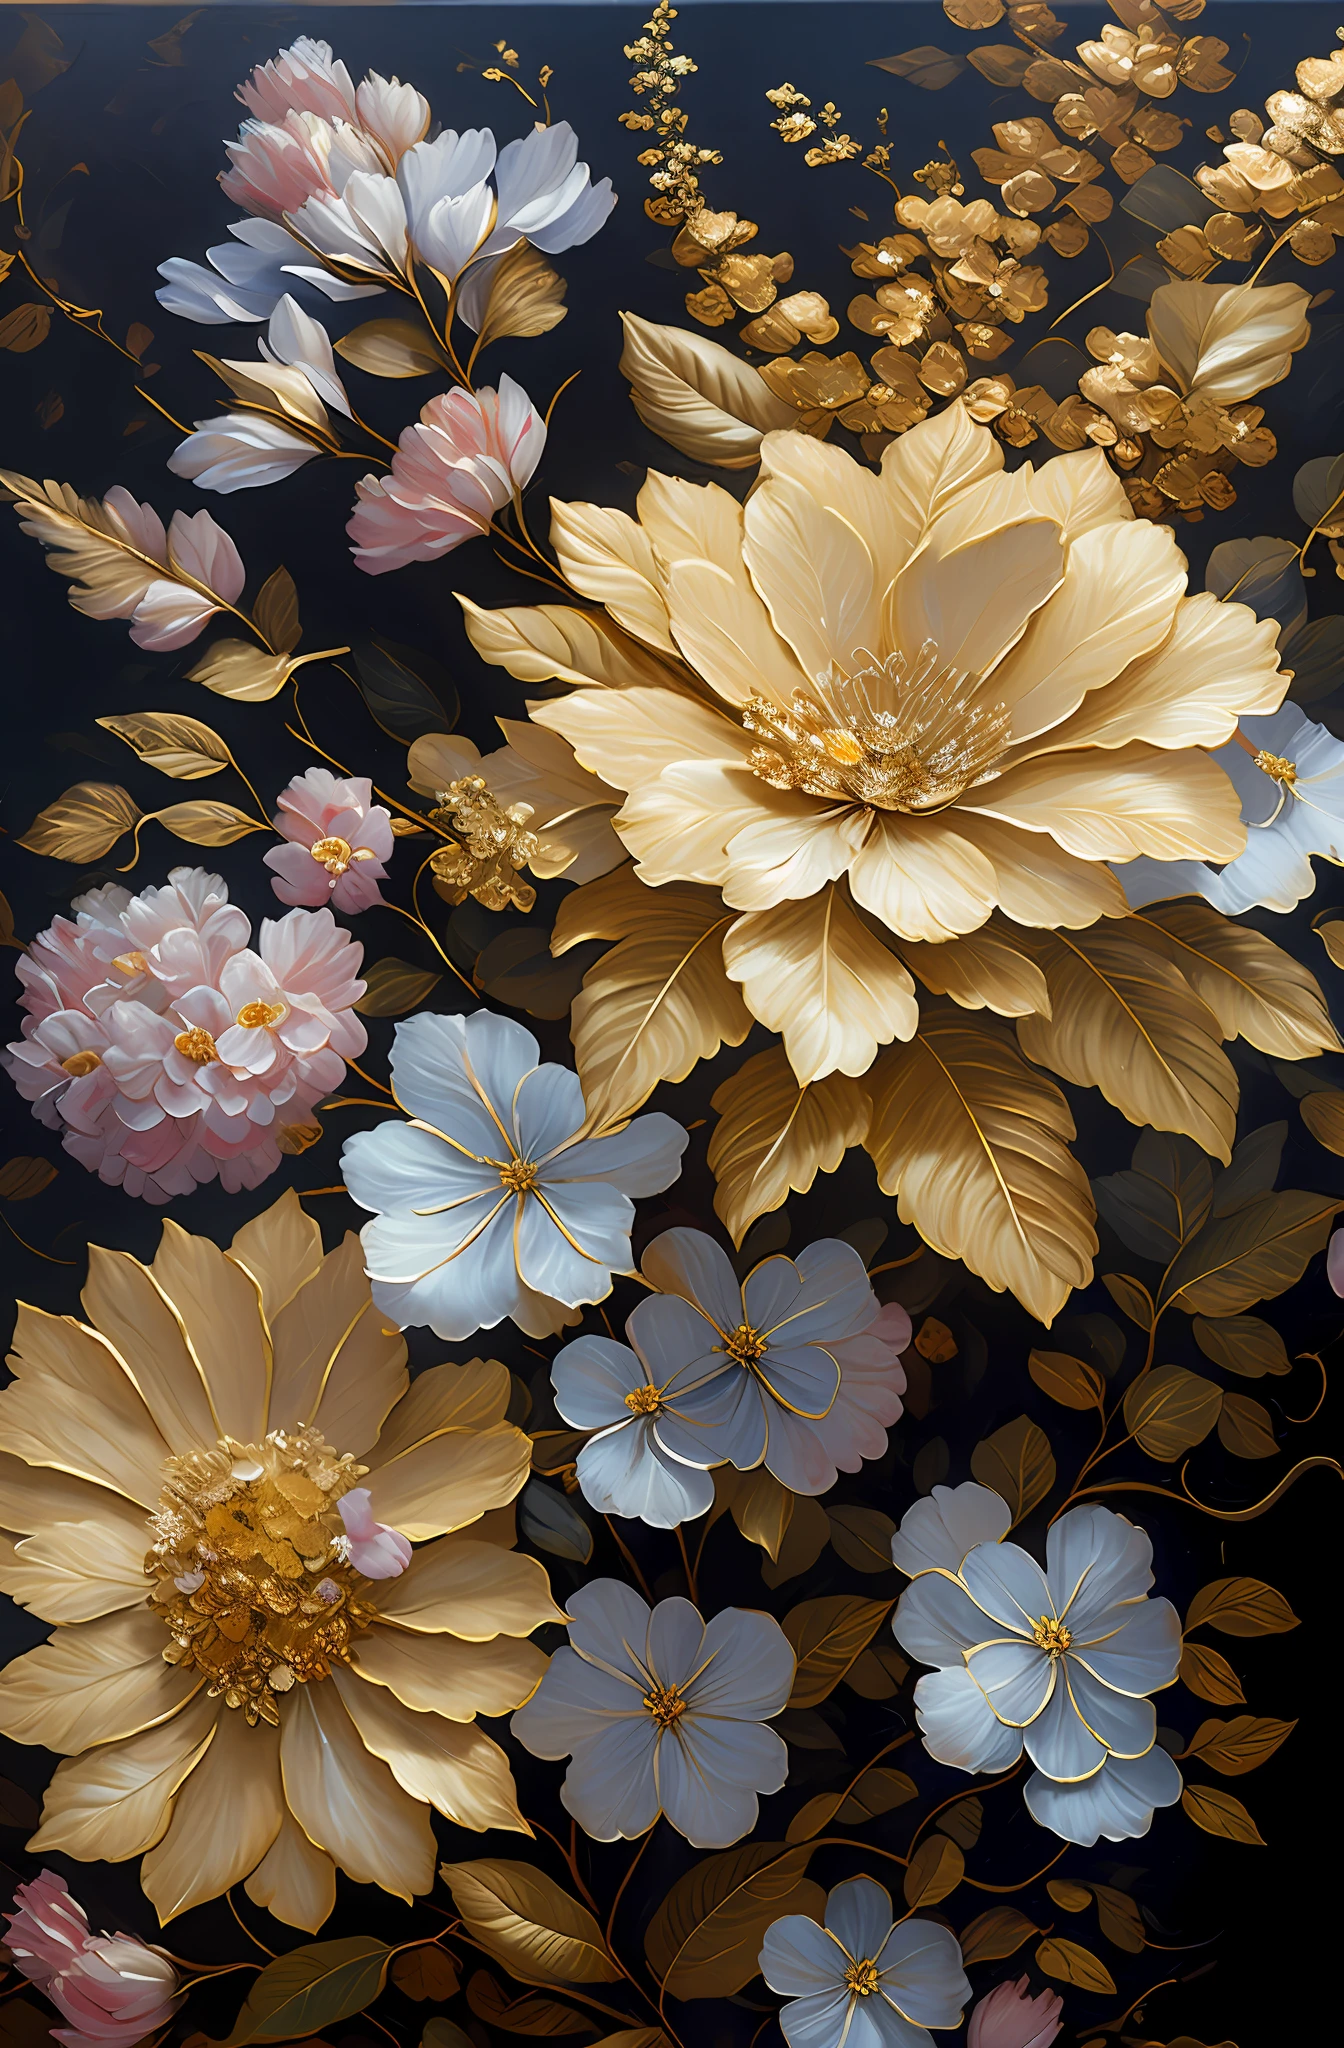 Es gibt ein Gemälde von Blumen mit silbernen Blättern, goldene Blumen, Hortensien und Prunkwinden, Blumen und Gold, vergoldet reliefs, detaillierte Blumen, Wunderschöne Blumen, Goldene, schuppige Blüten, komplizierte Blumen, chaotische Blattgoldblumen, Detailliertes 4K-Ölgemälde, atemberaubende und detailreiche, vergoldet. Blumen, Blumen. barocke Elemente, komplizierte Ölgemälde